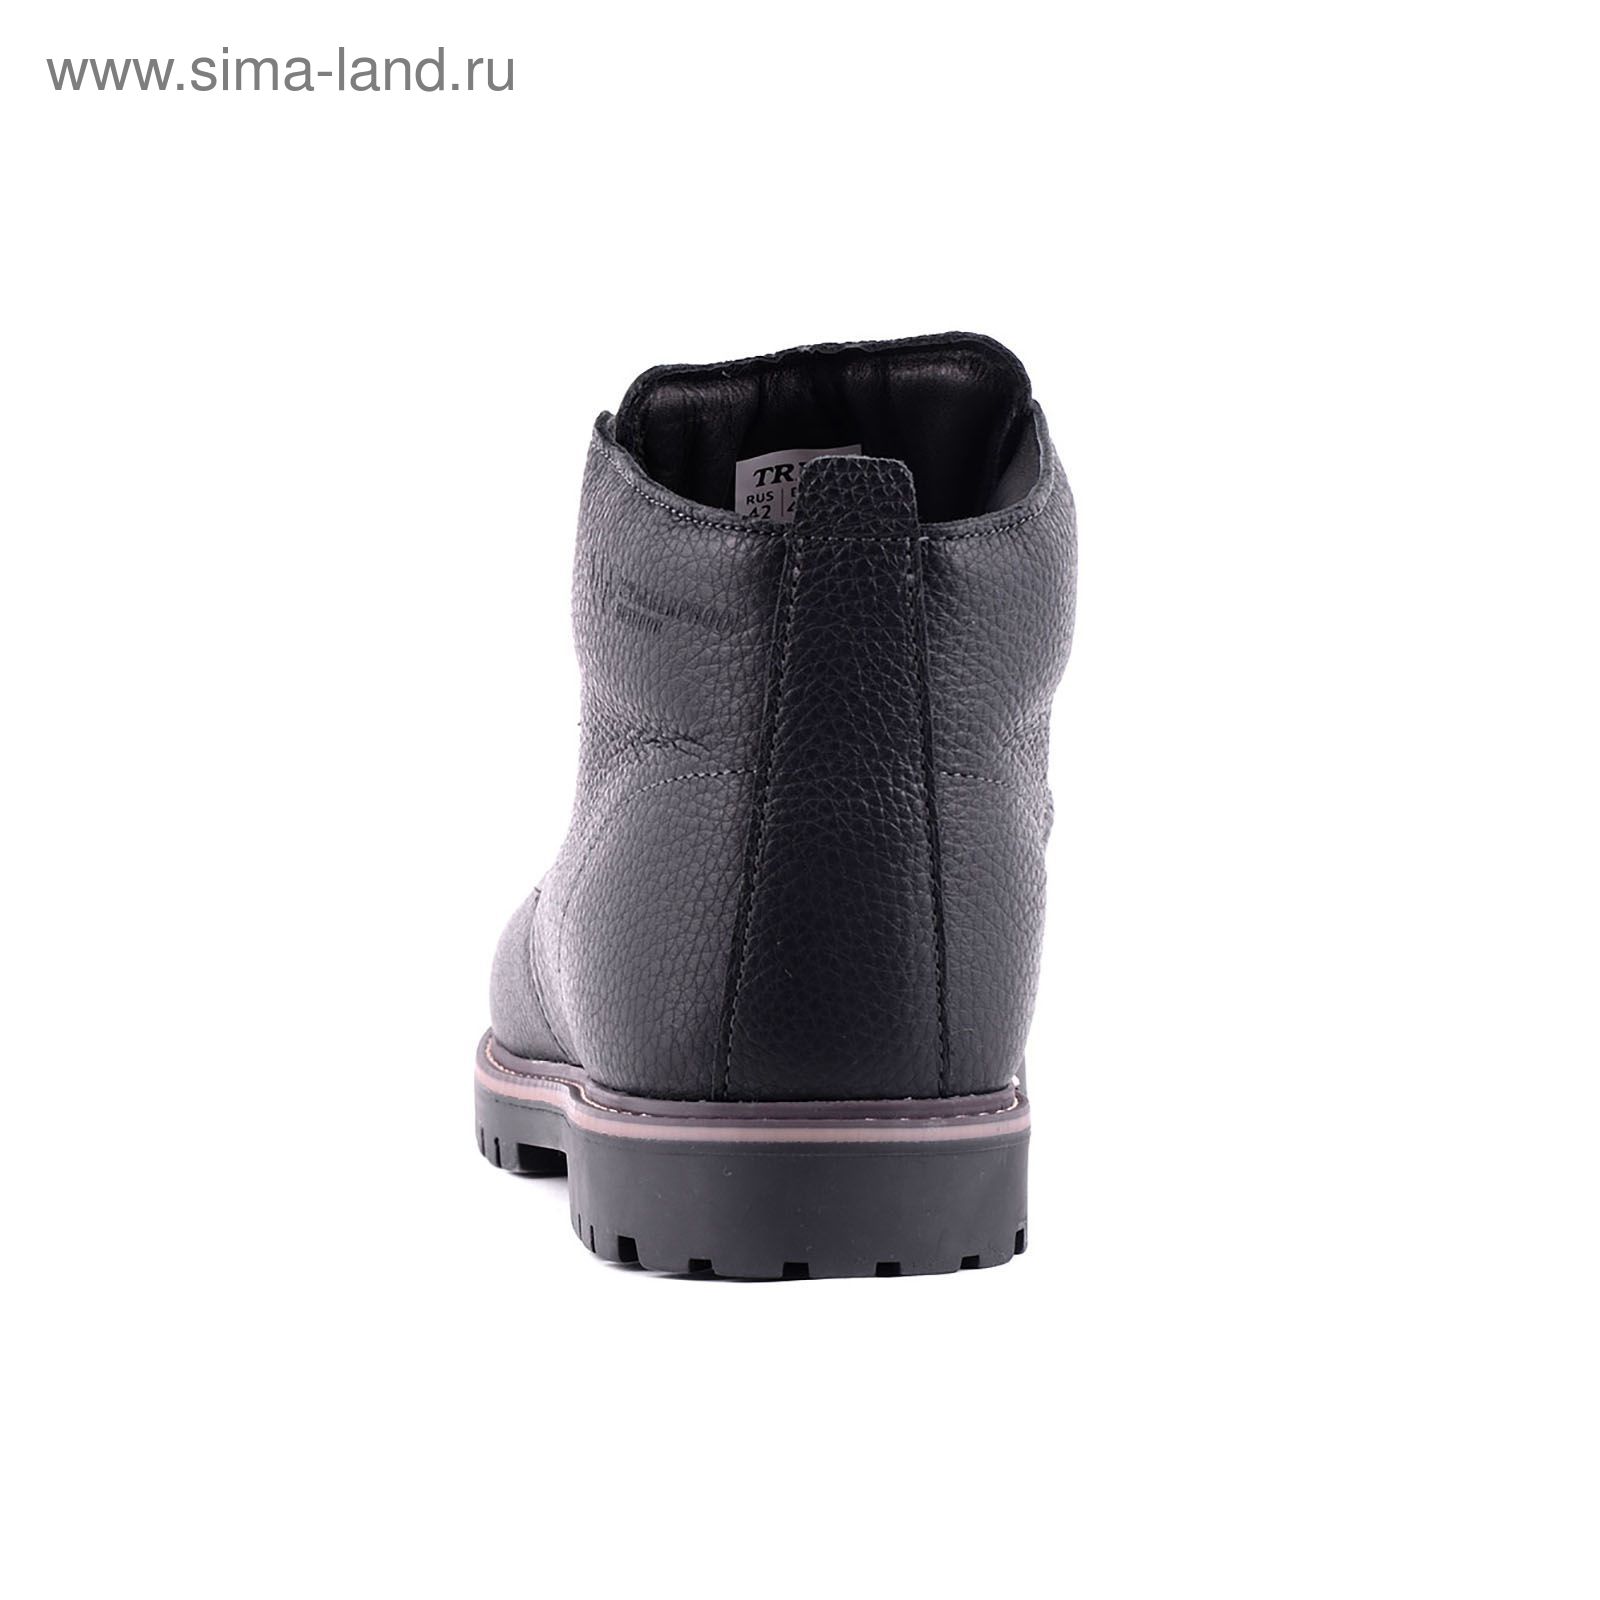 Ботинки TREK "Синема" 84-01 с мехом, размер 40, цвет чёрный